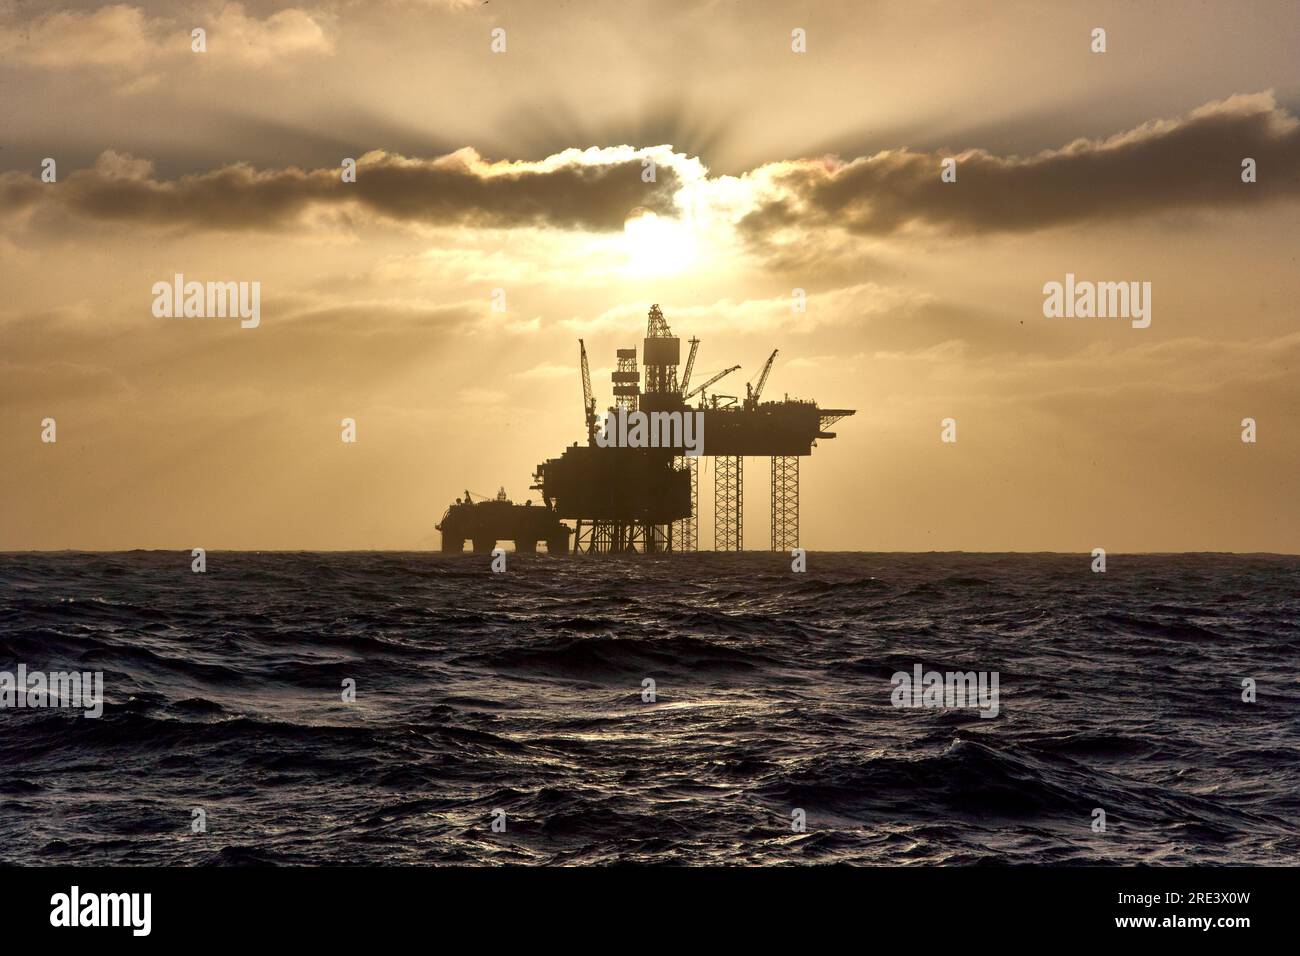 ISilhouette d'une plate-forme de forage Jack up dans la mer du Nord au coucher du soleil. Plate-forme offshore de la mer du Nord pour le pétrole et le gaz. Banque D'Images